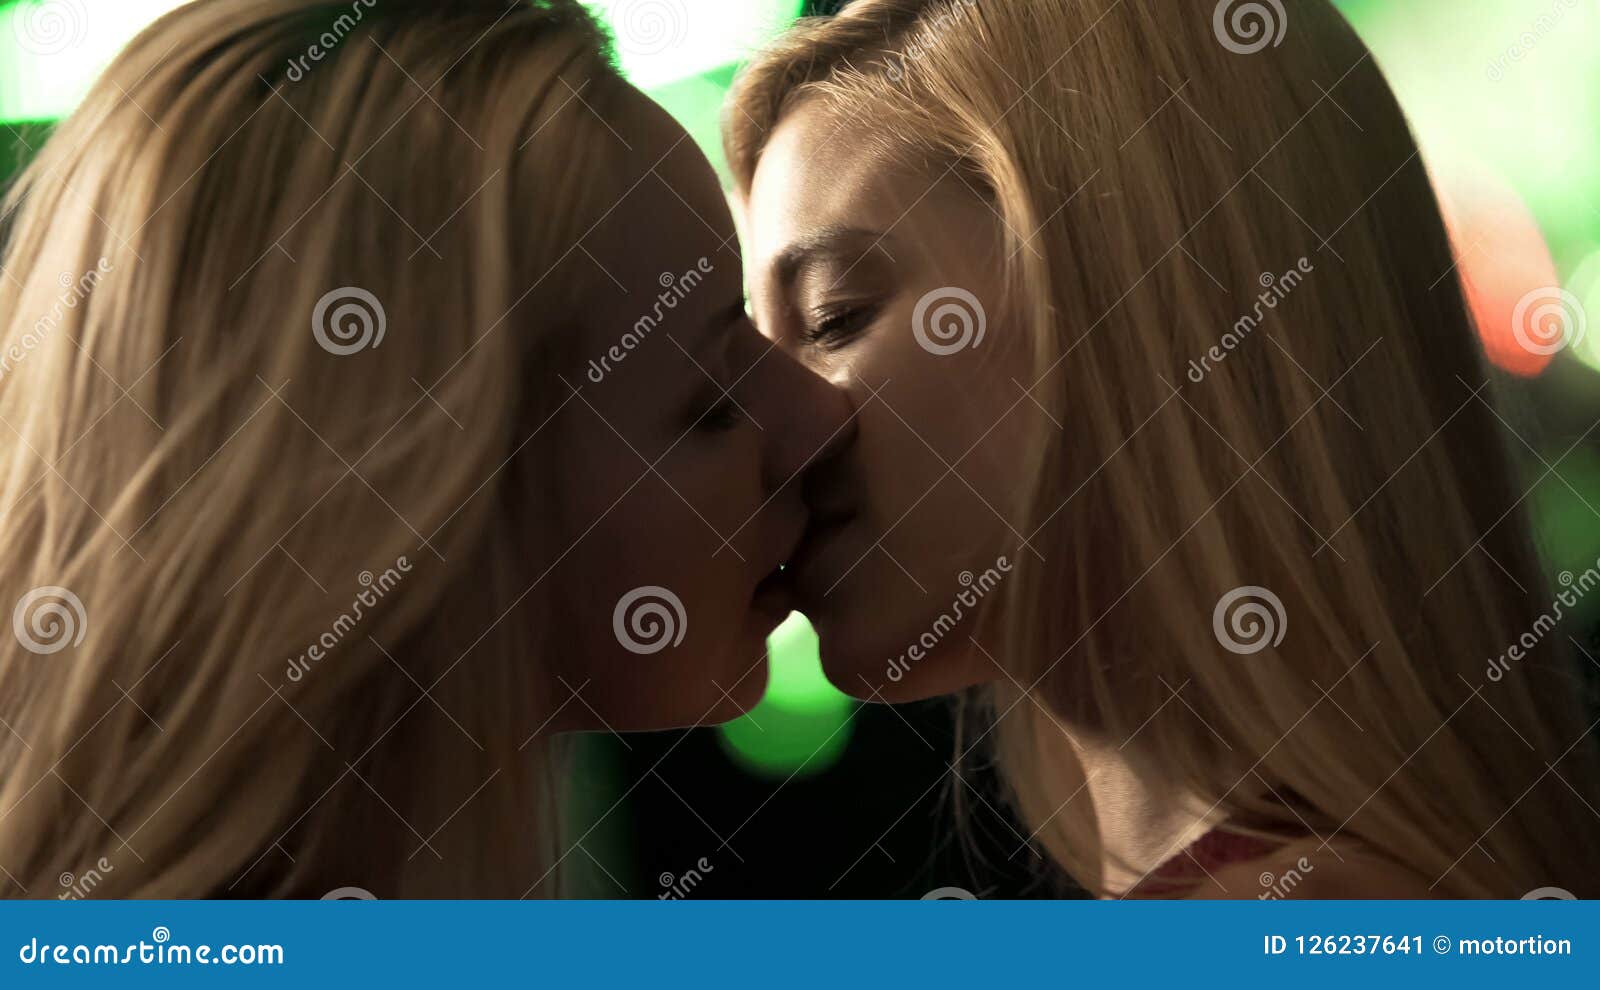 christina schriver add drunk teen lesbian sex photo